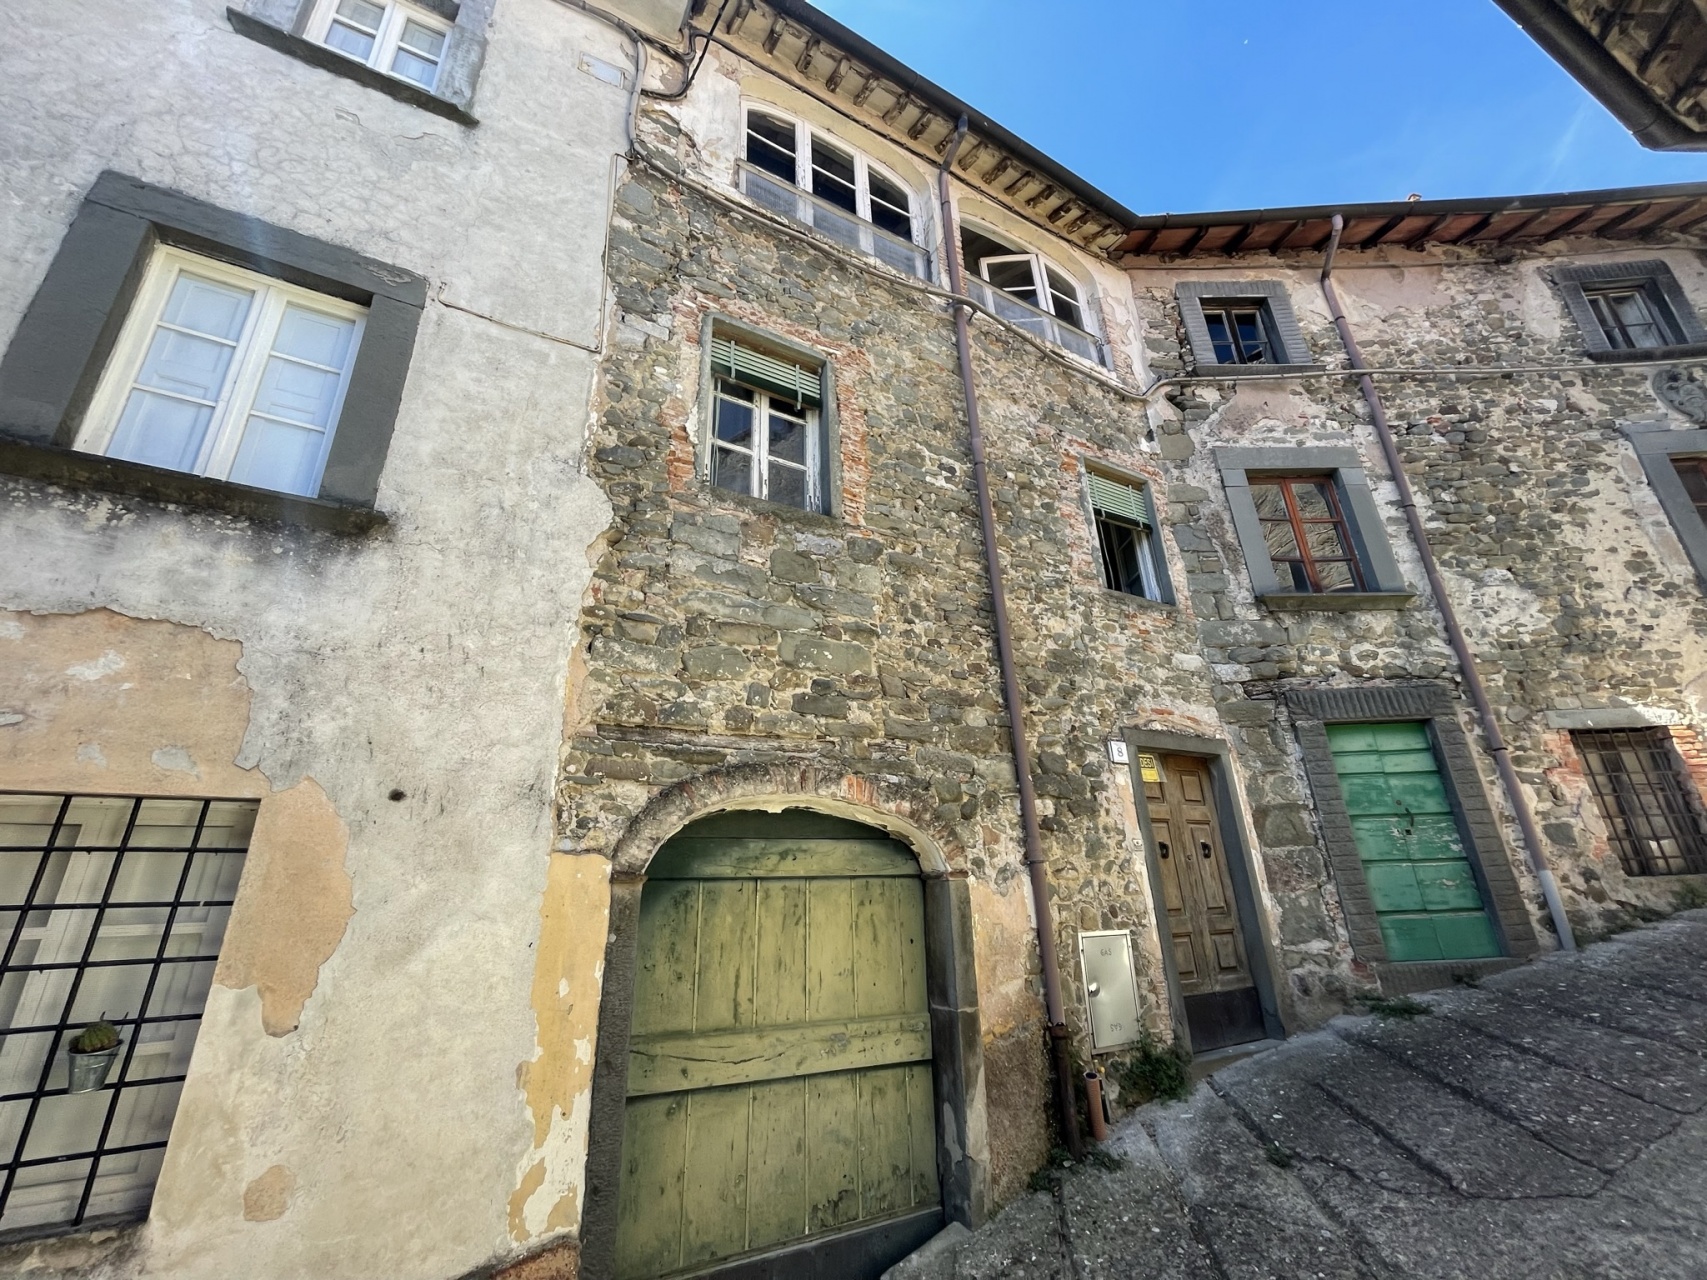 foto Casa di paese con balcone nel comune di Coreglia Antelminelli, Lucca.